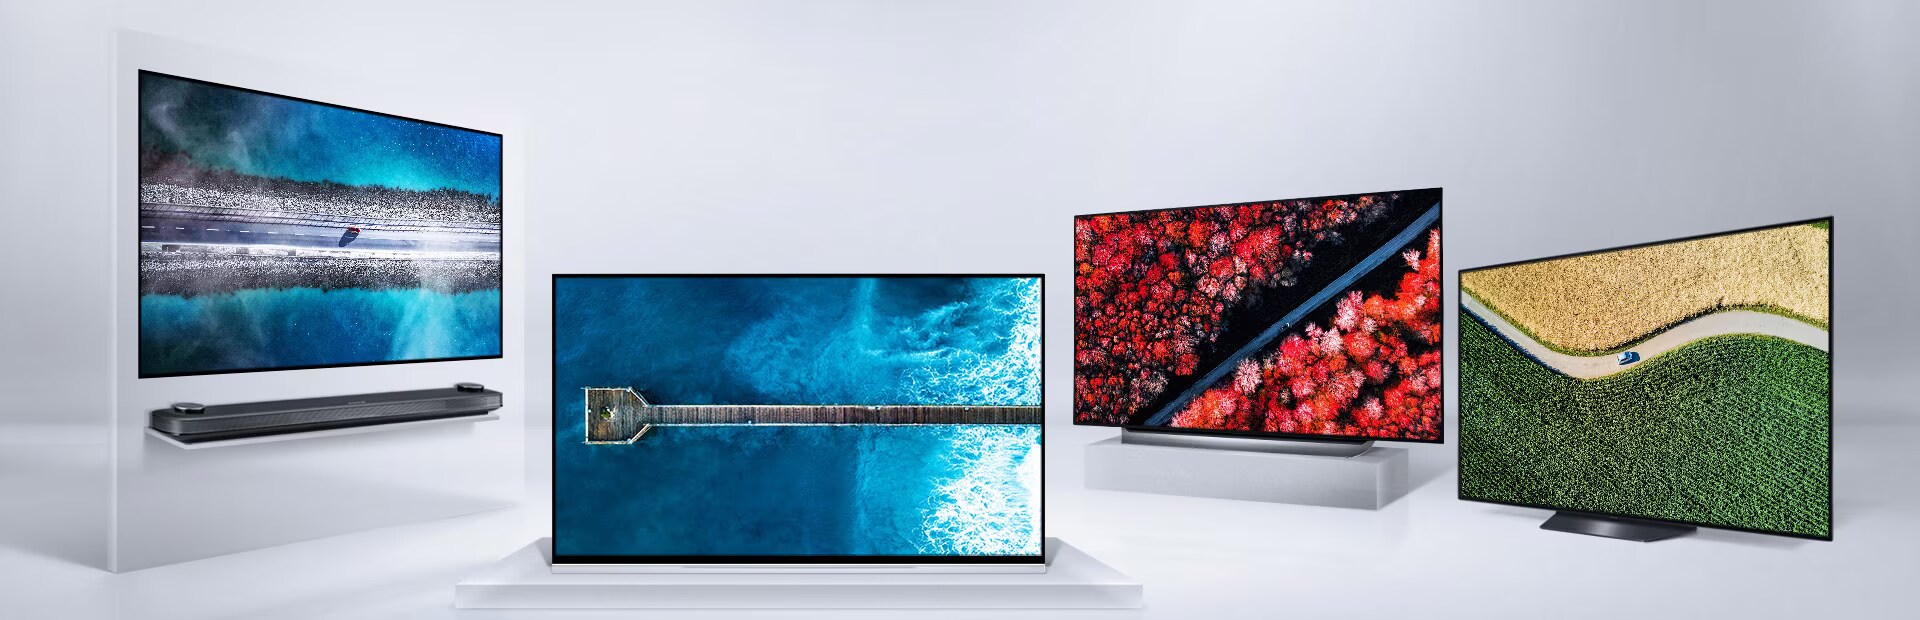 LG OLED AI ThinQ TV Line Up